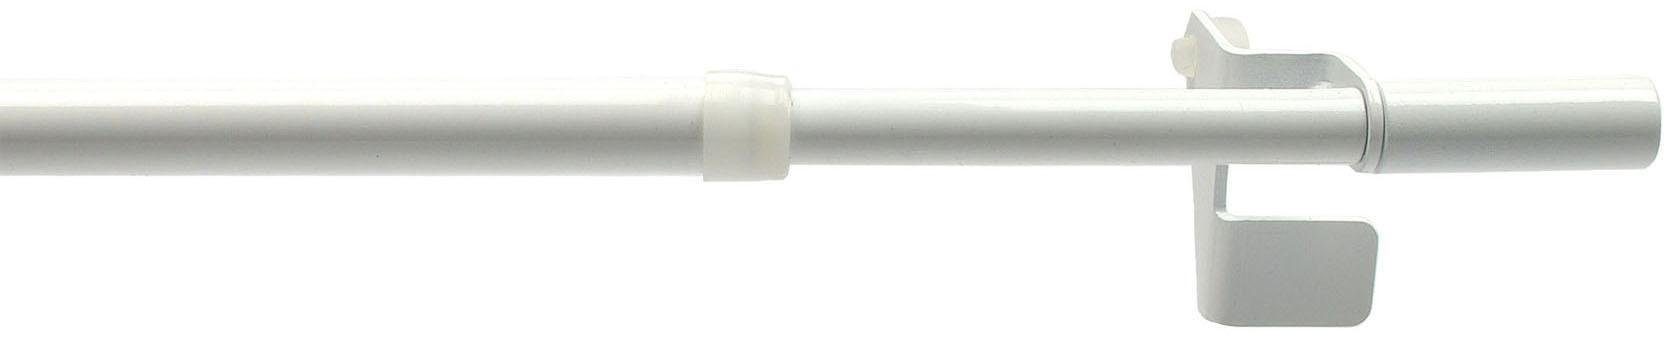 Scheibenstange Press-Fix, Liedeco, Ø 12 mm, 1-läufig, ausziehbar, ohne  Bohren, geklemmt, Edelstahl, Kunststoff